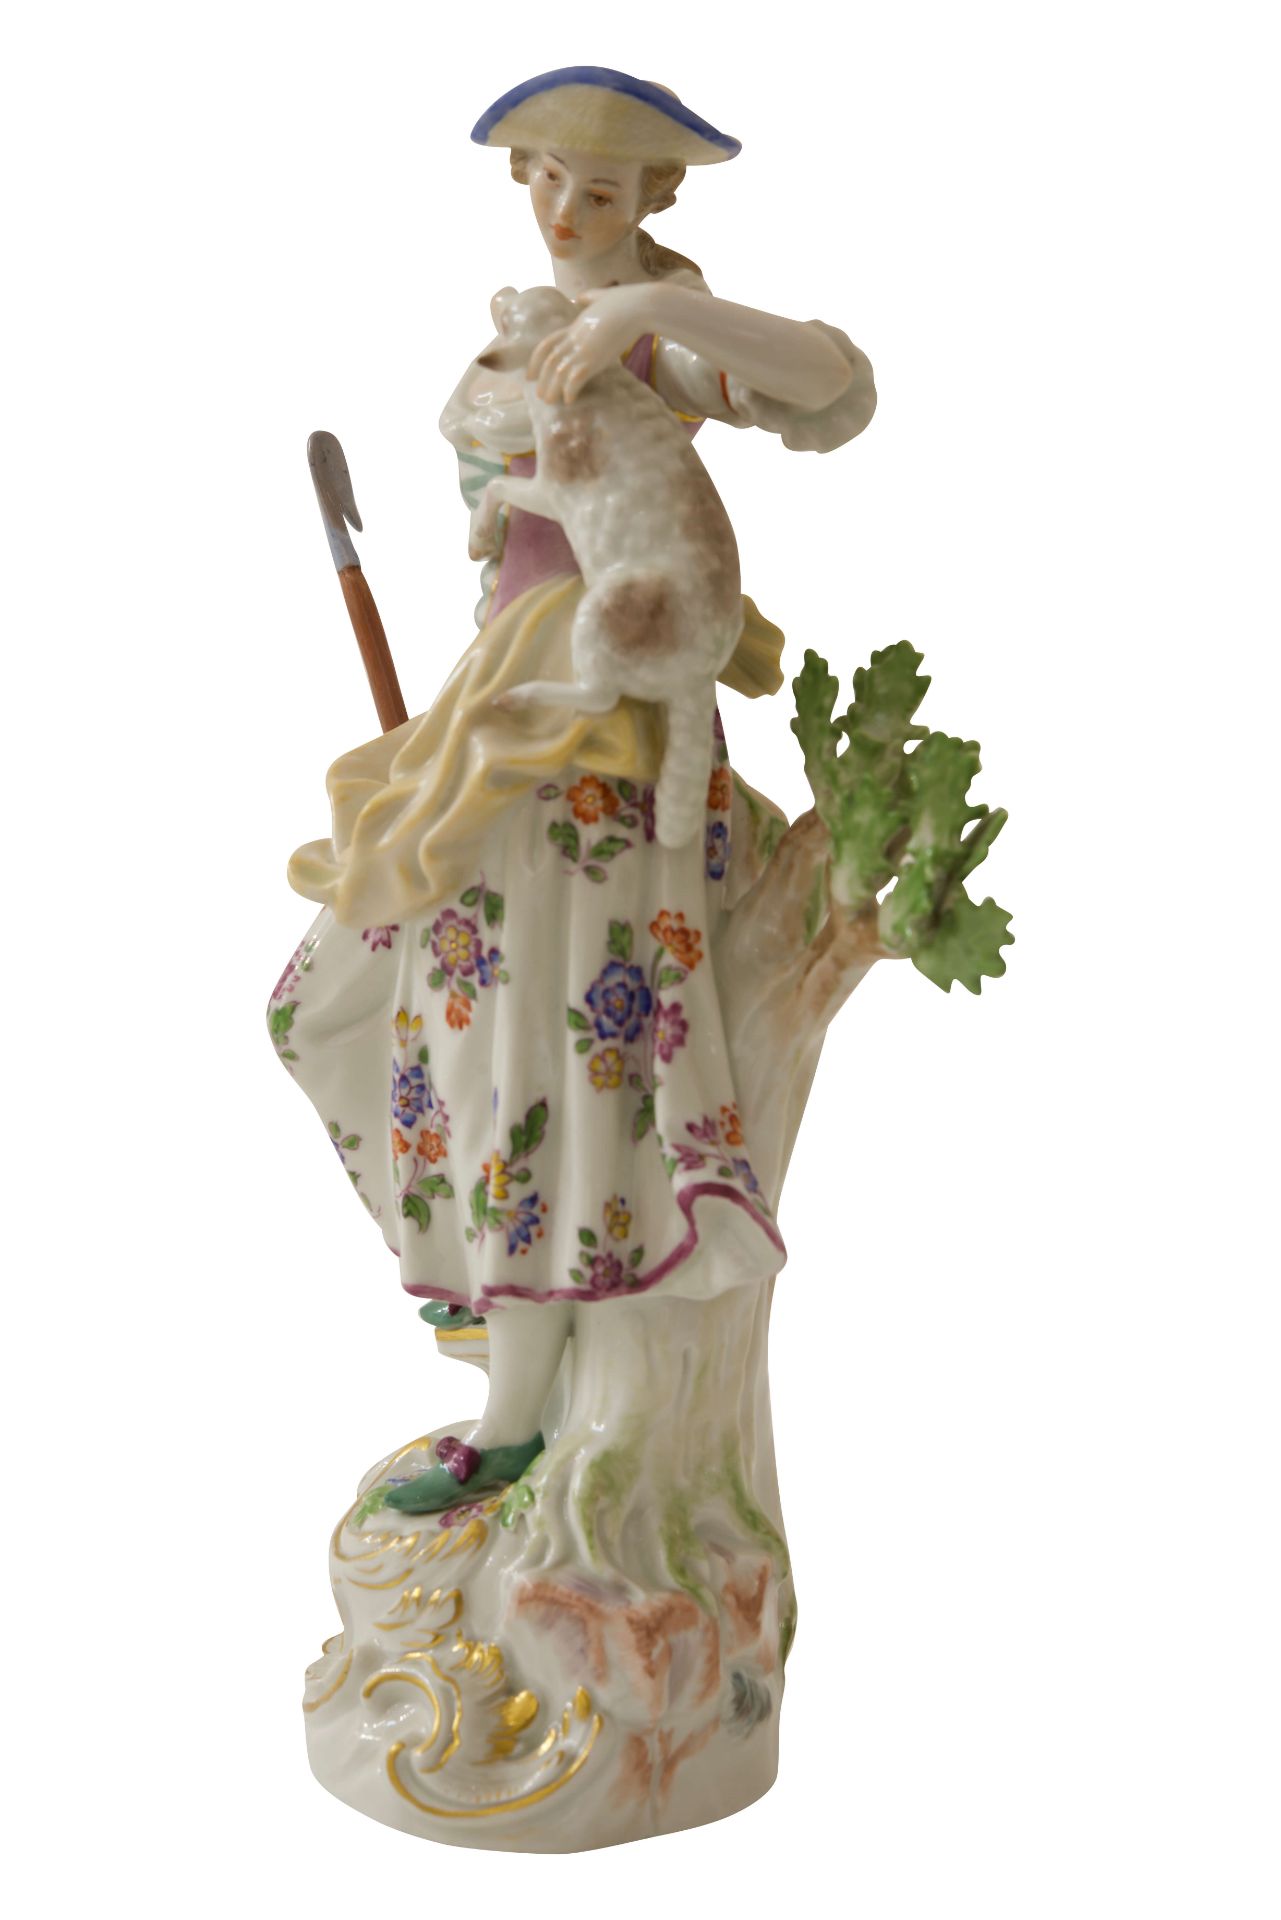 Große Figur "Schäferin" Meisen|Large Figurine "Shepherdess" Meissen - Bild 2 aus 7